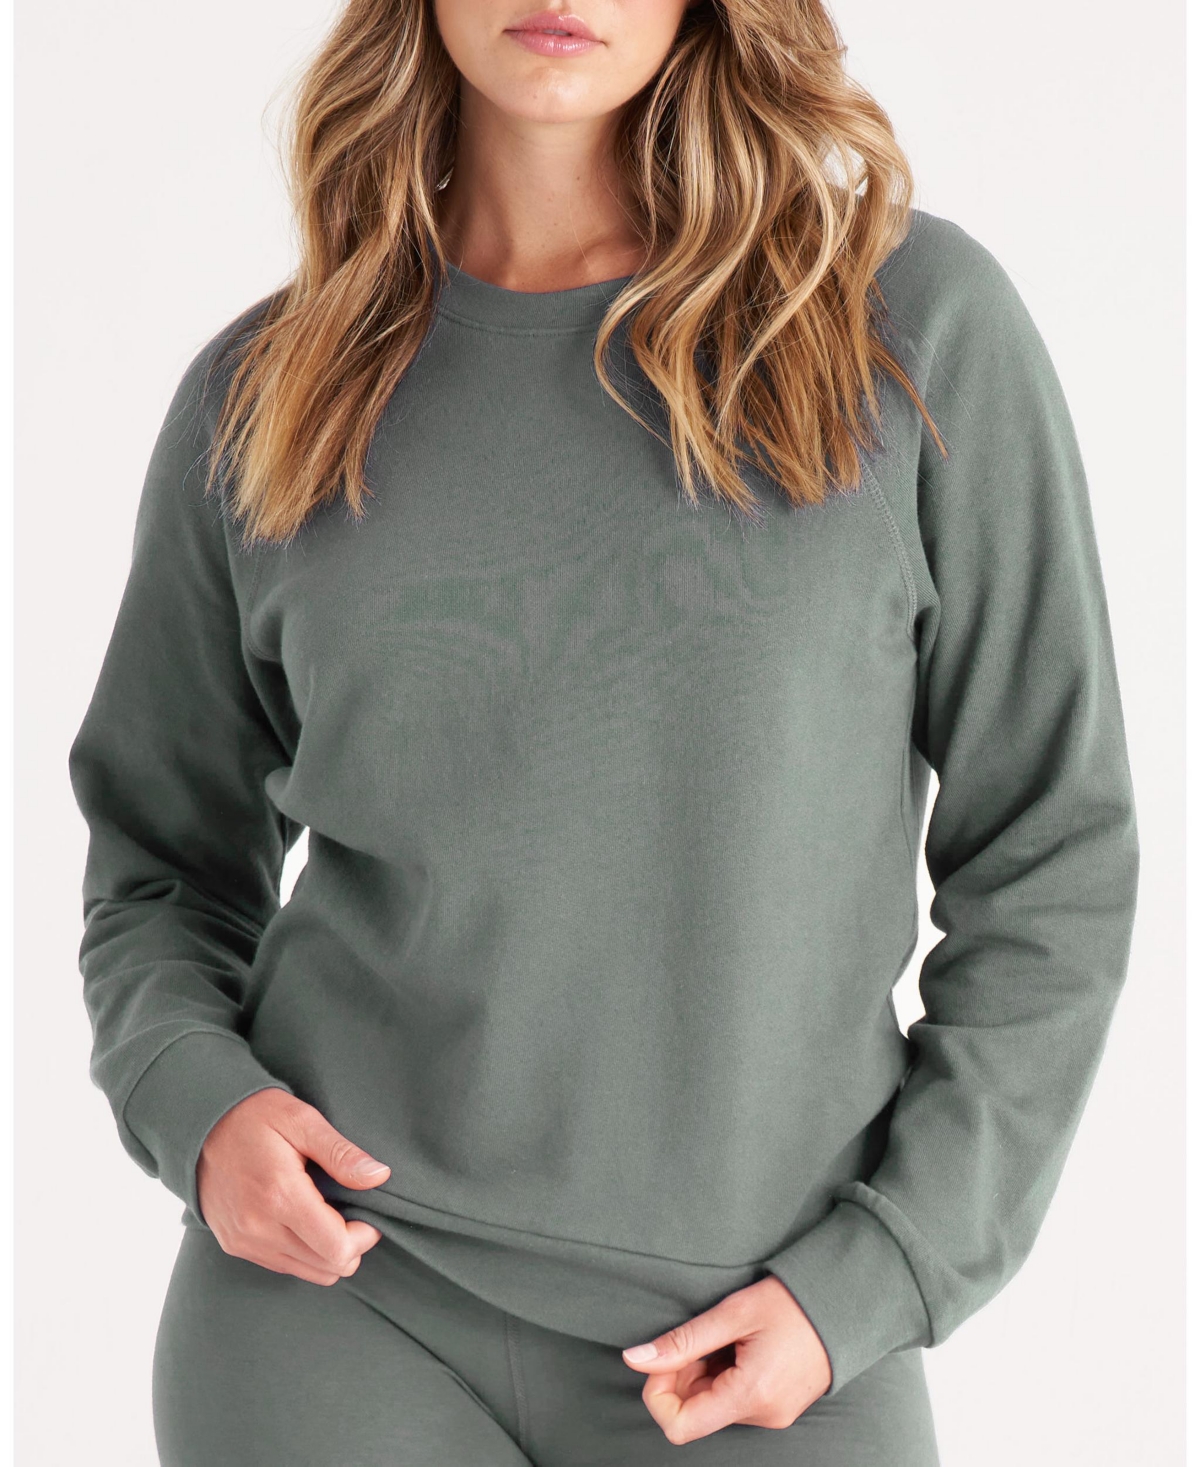  The Women's Raglan Sweatshirt